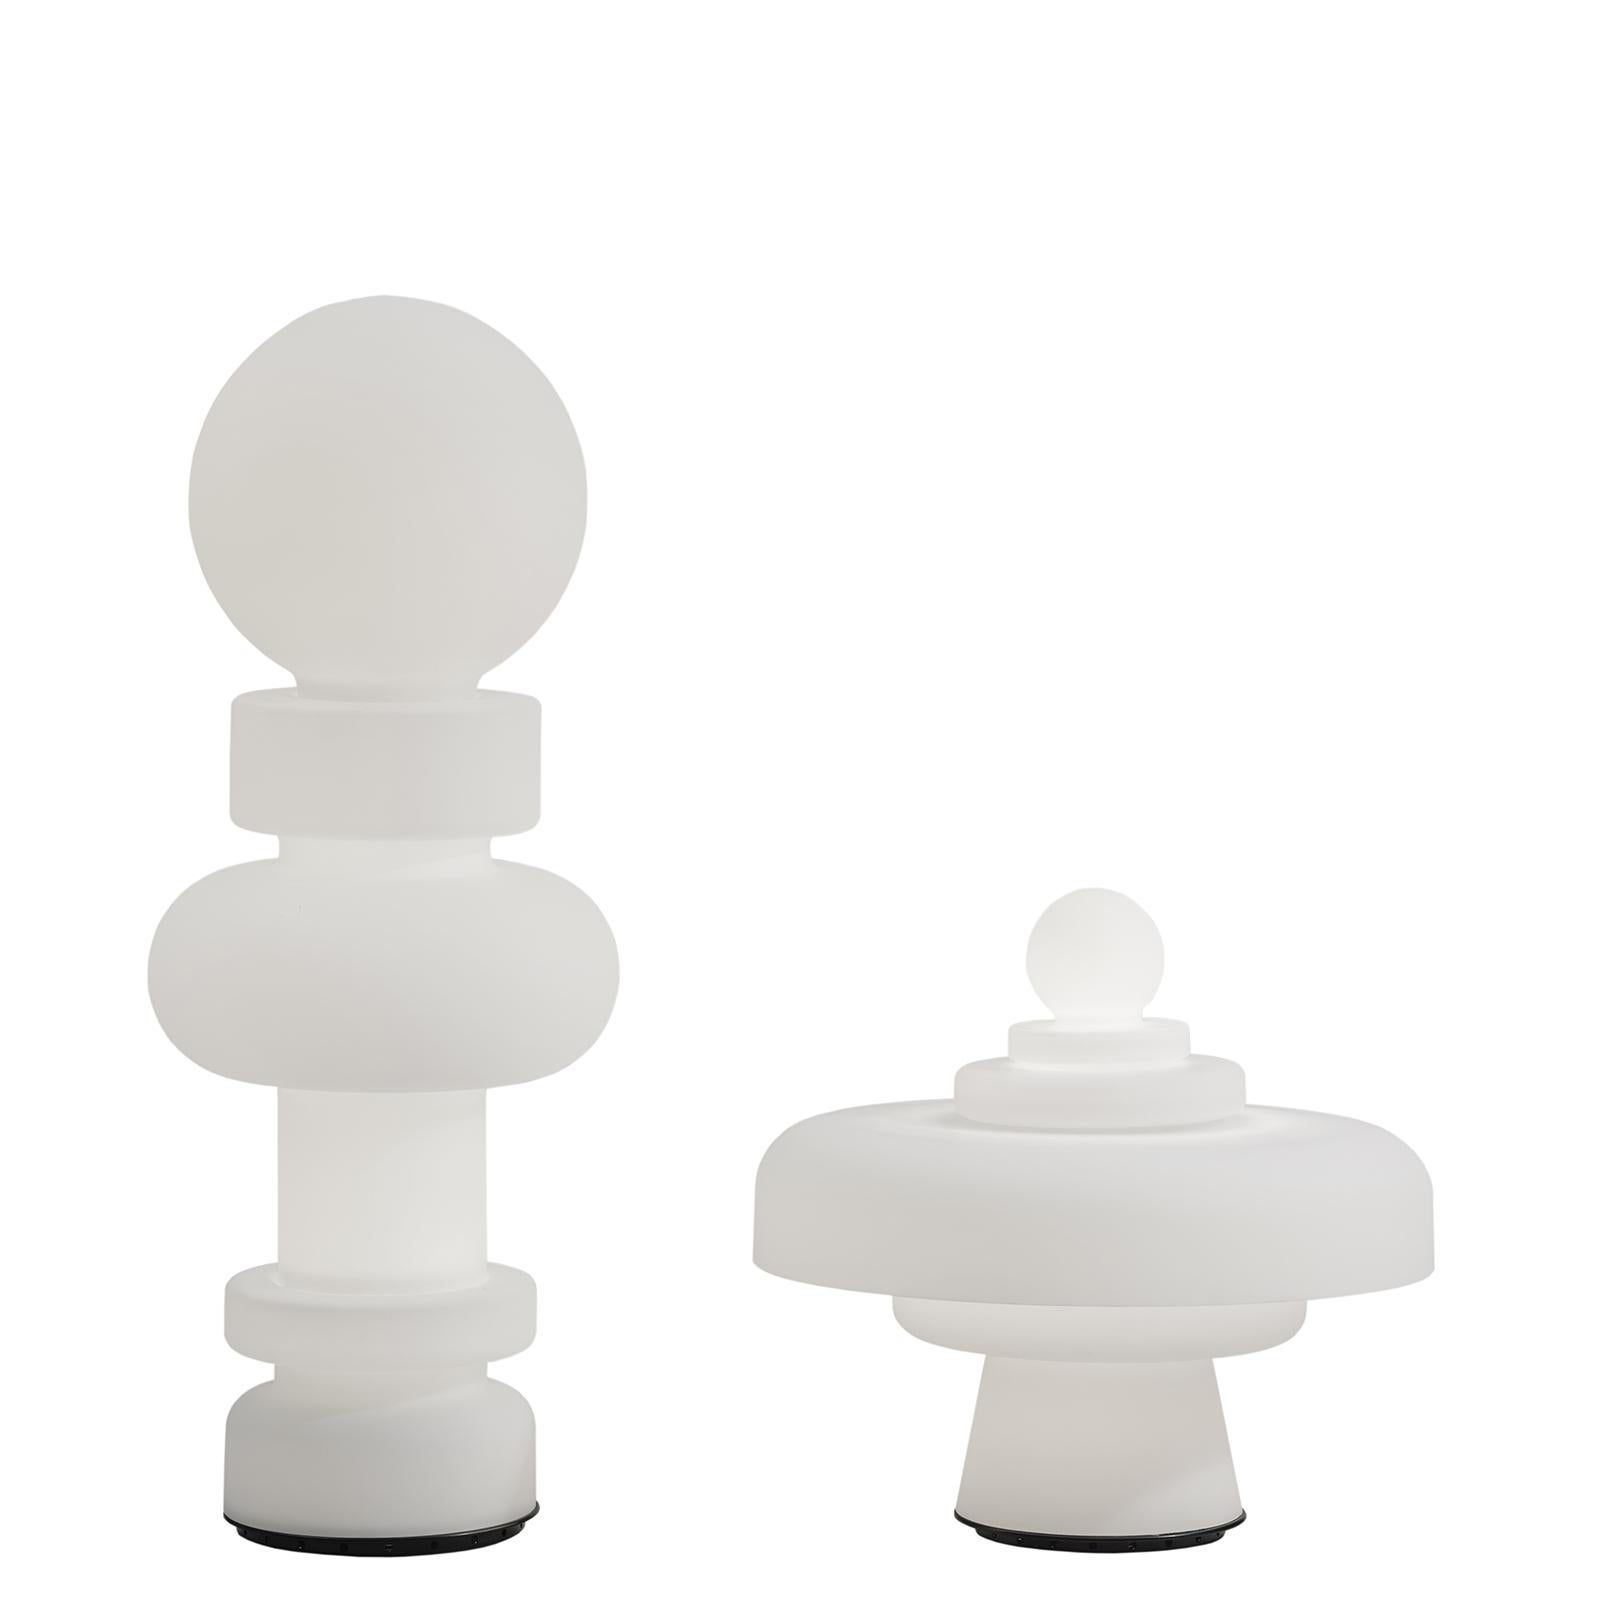 Inspirados en el juego del ajedrez con sus formas sinuosas, Re y Regina son los personajes clave del tablero. Sus perfiles destacan claramente bajo la luz blanca difundida por el cristal opalescente. Individuos reales, juegan por parejas alternando